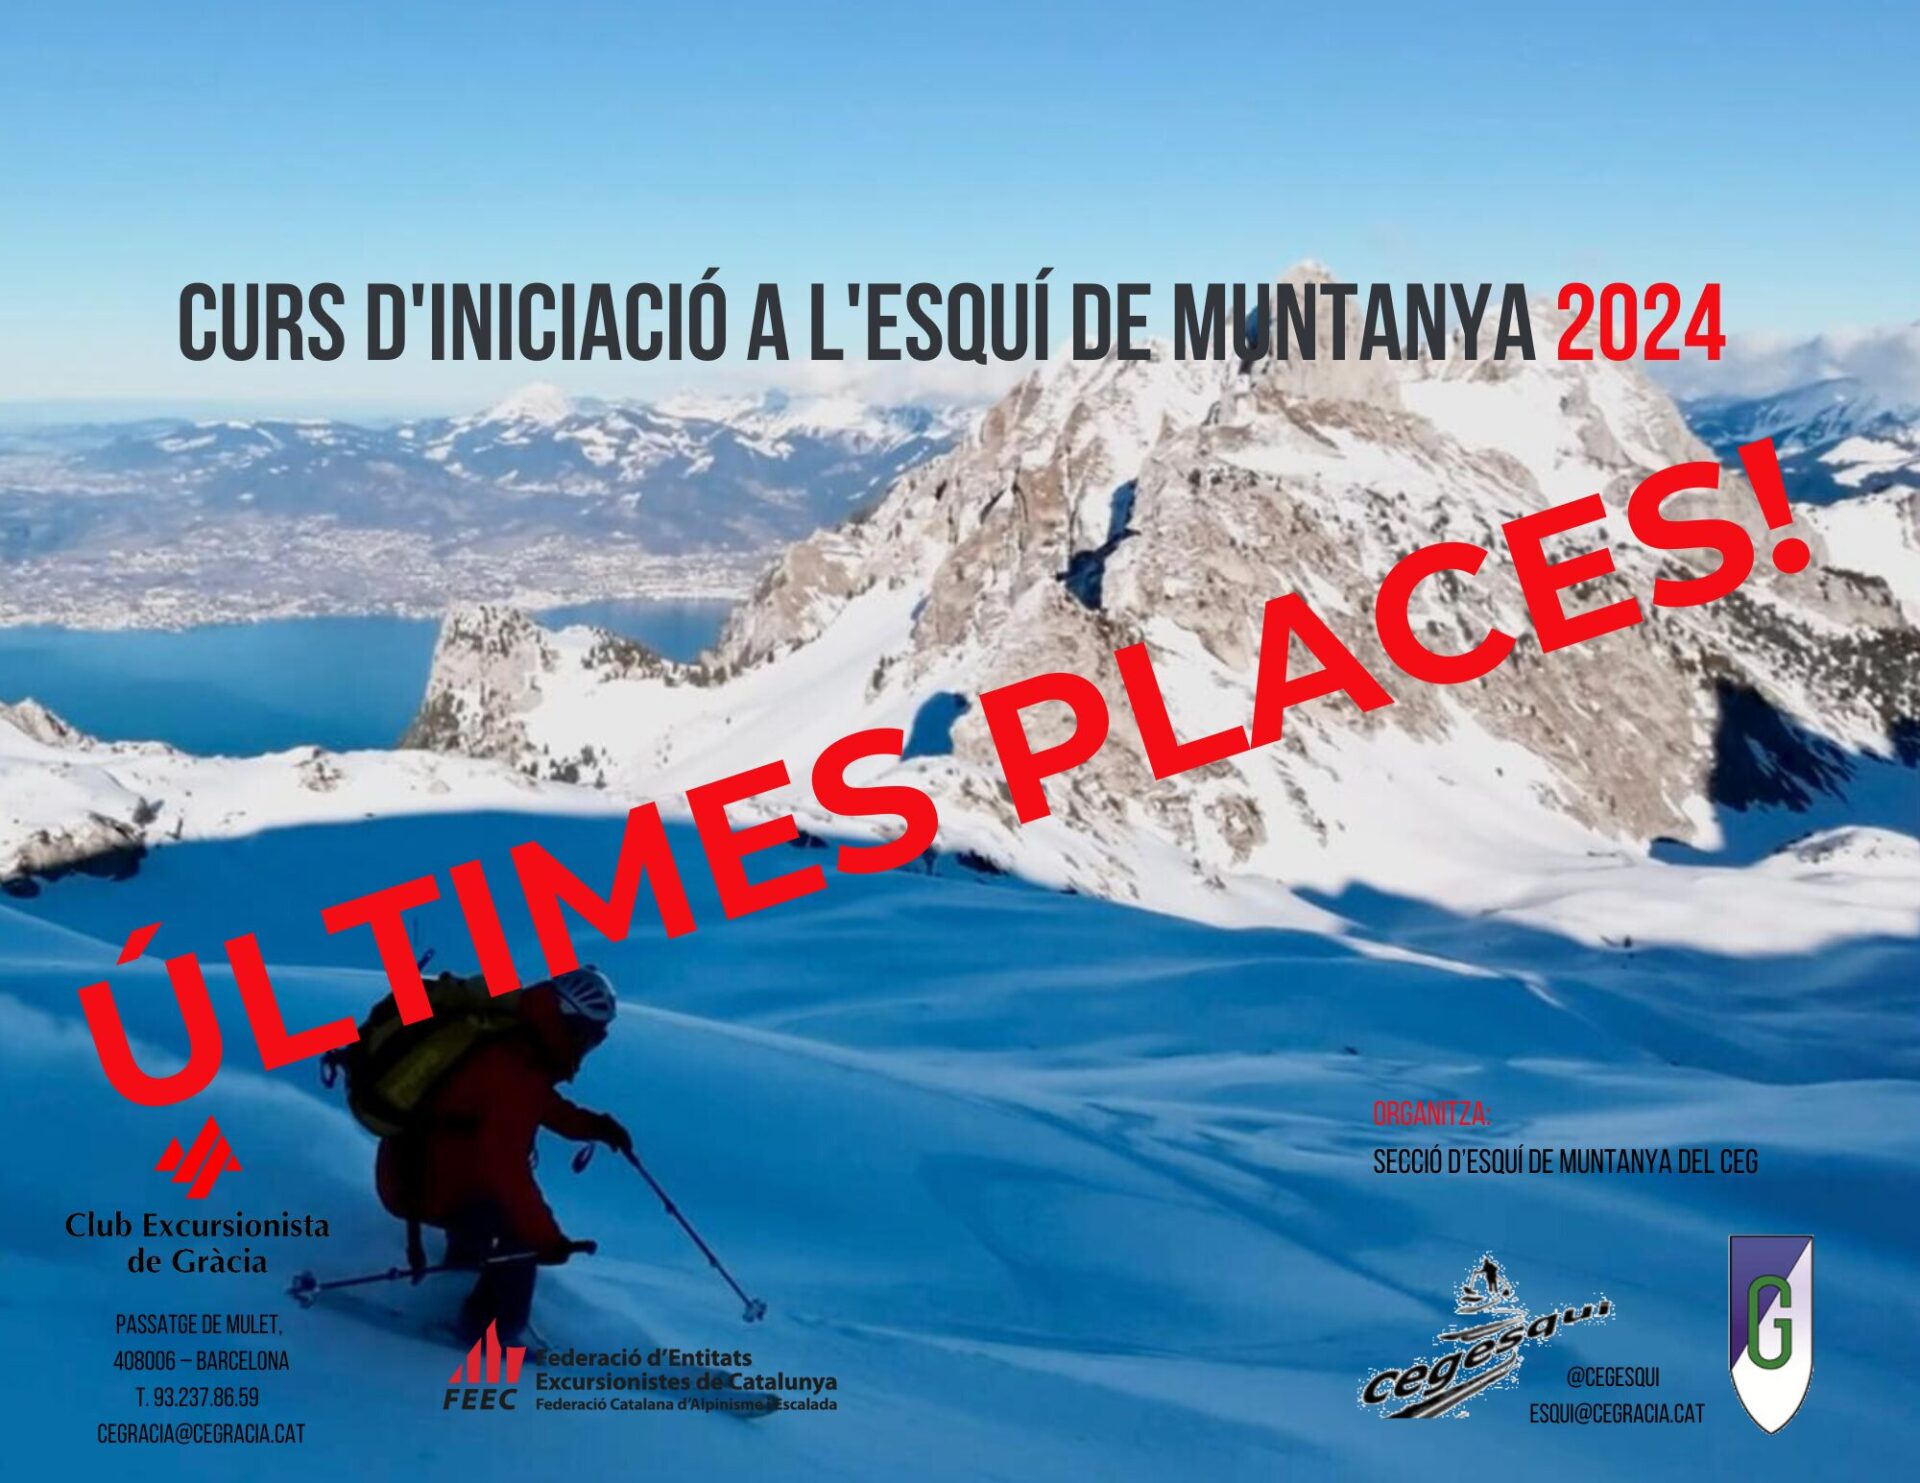 Curs d’iniciació a l’esquí de muntanya – Últimes places